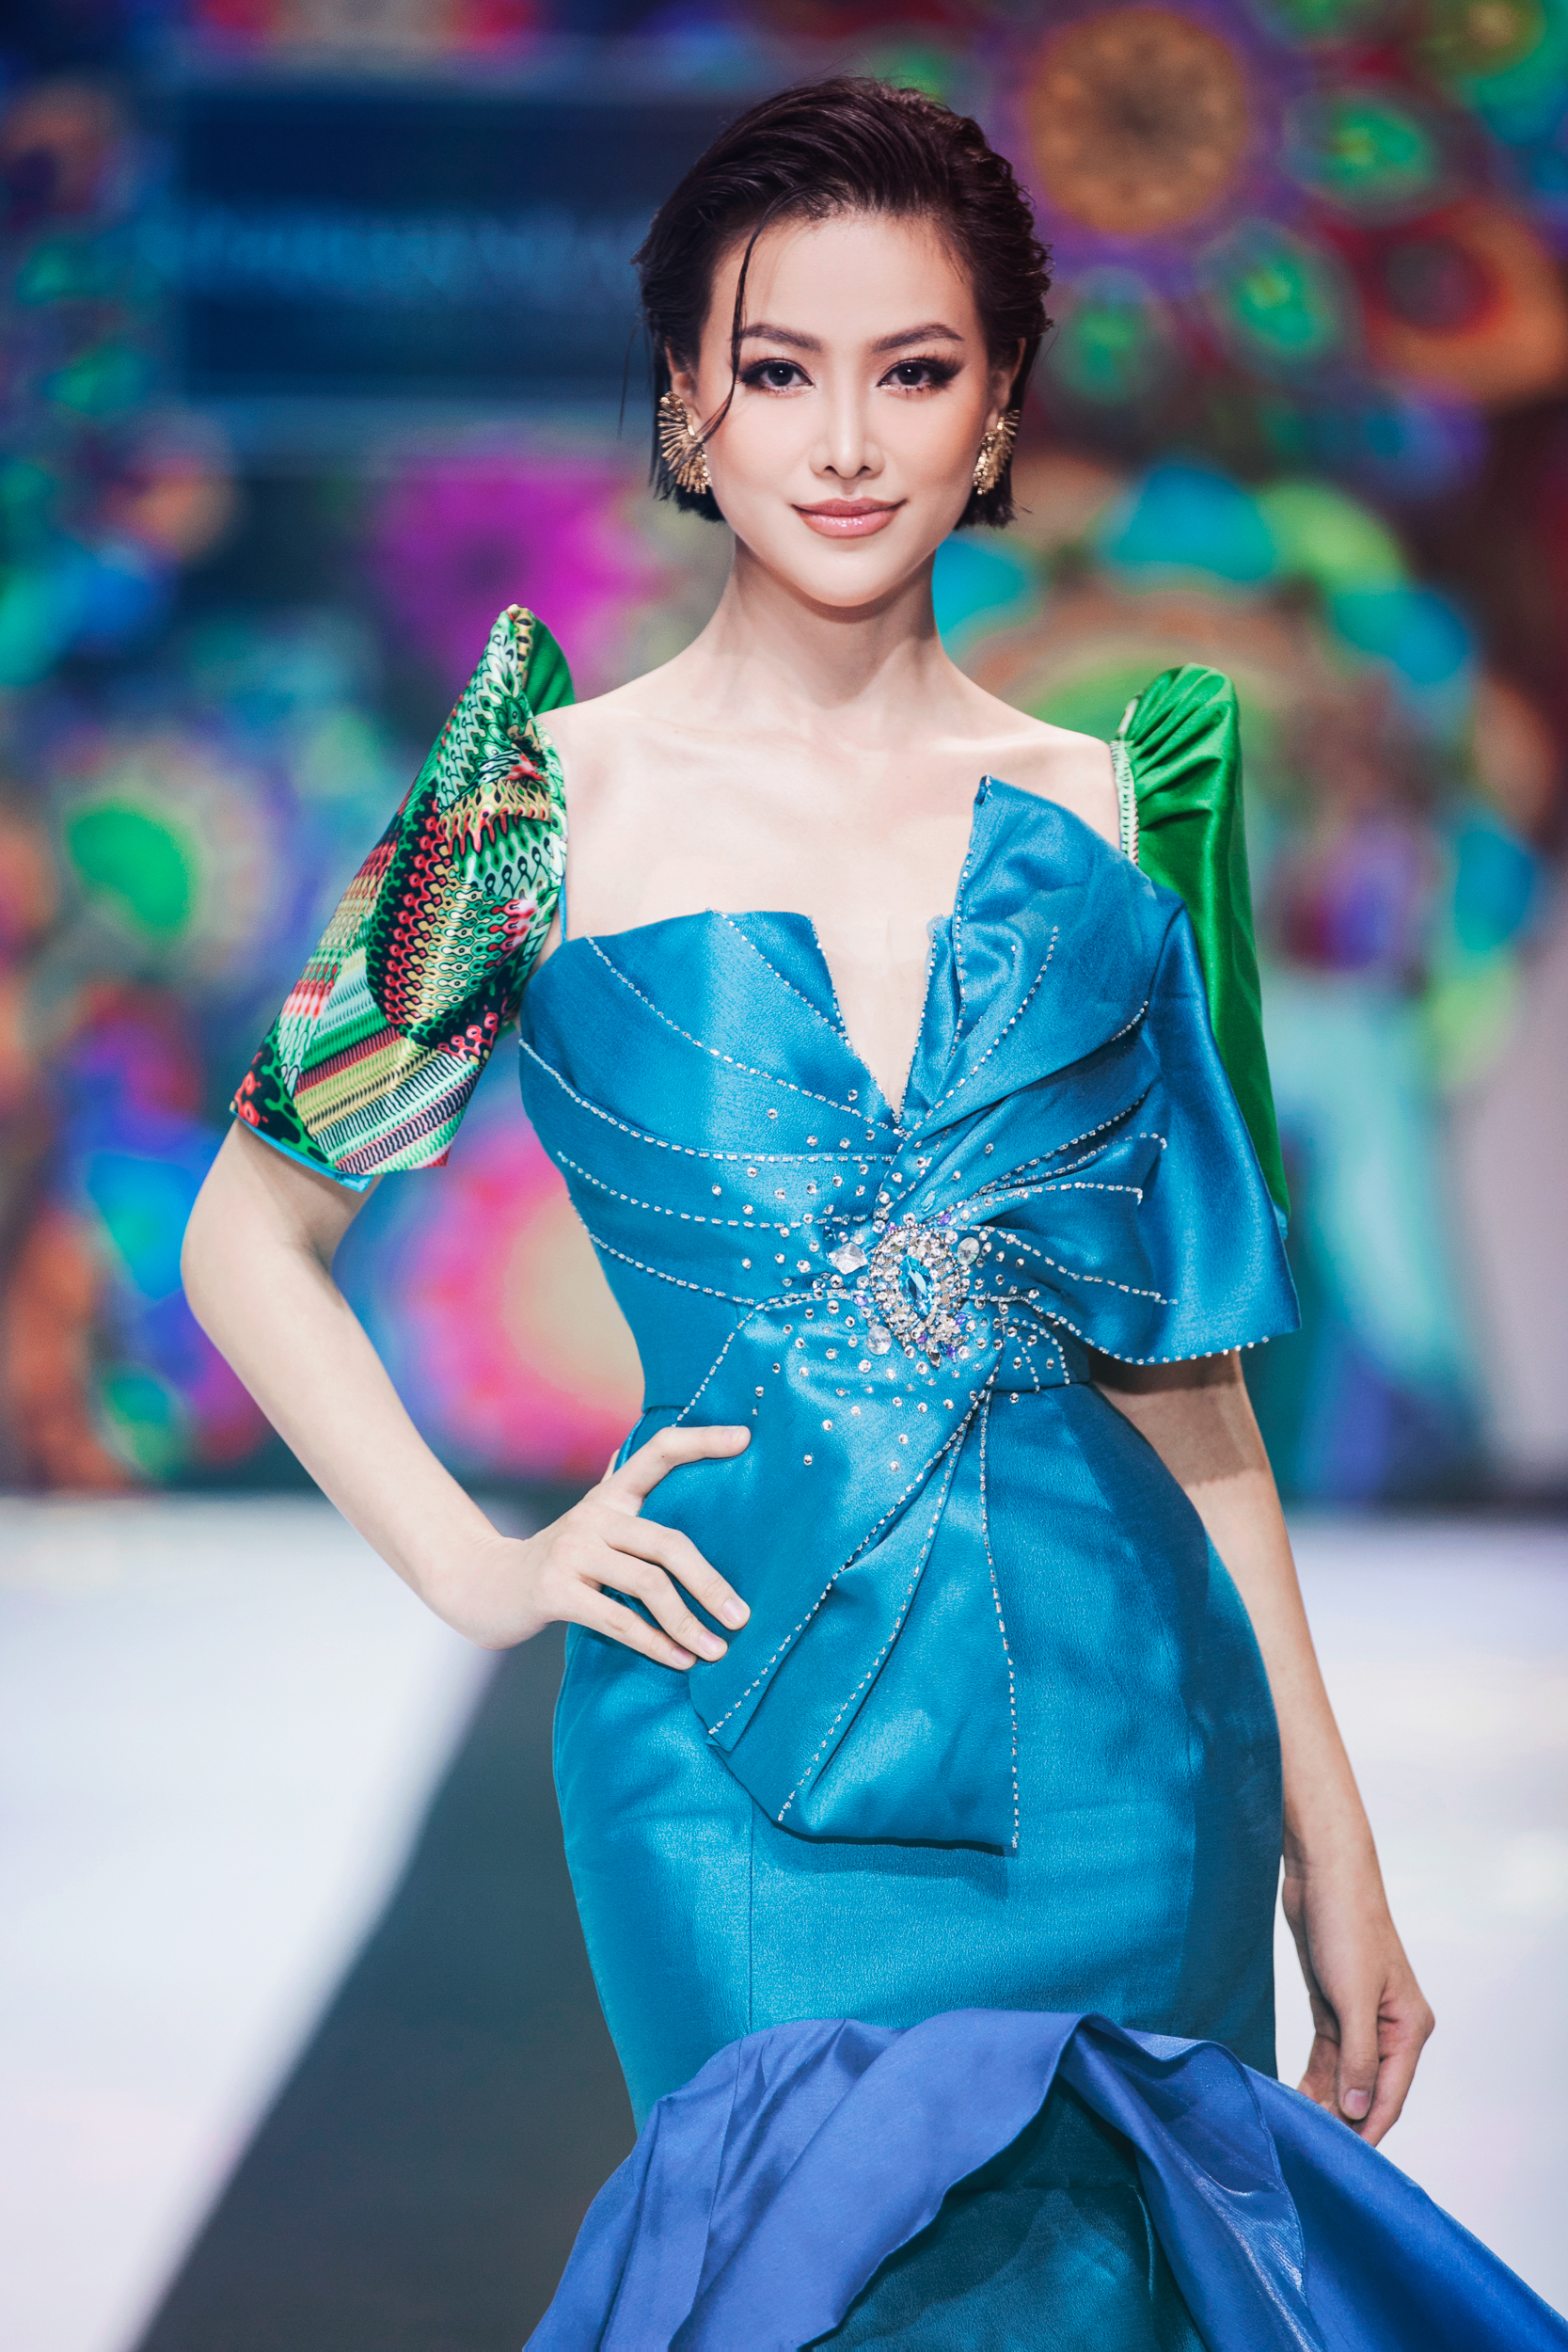 Lan Khuê đọ sắc cùng Hoa hậu Hoàn vũ Hàn Quốc trên sàn diễn thời trang- Ảnh 5.